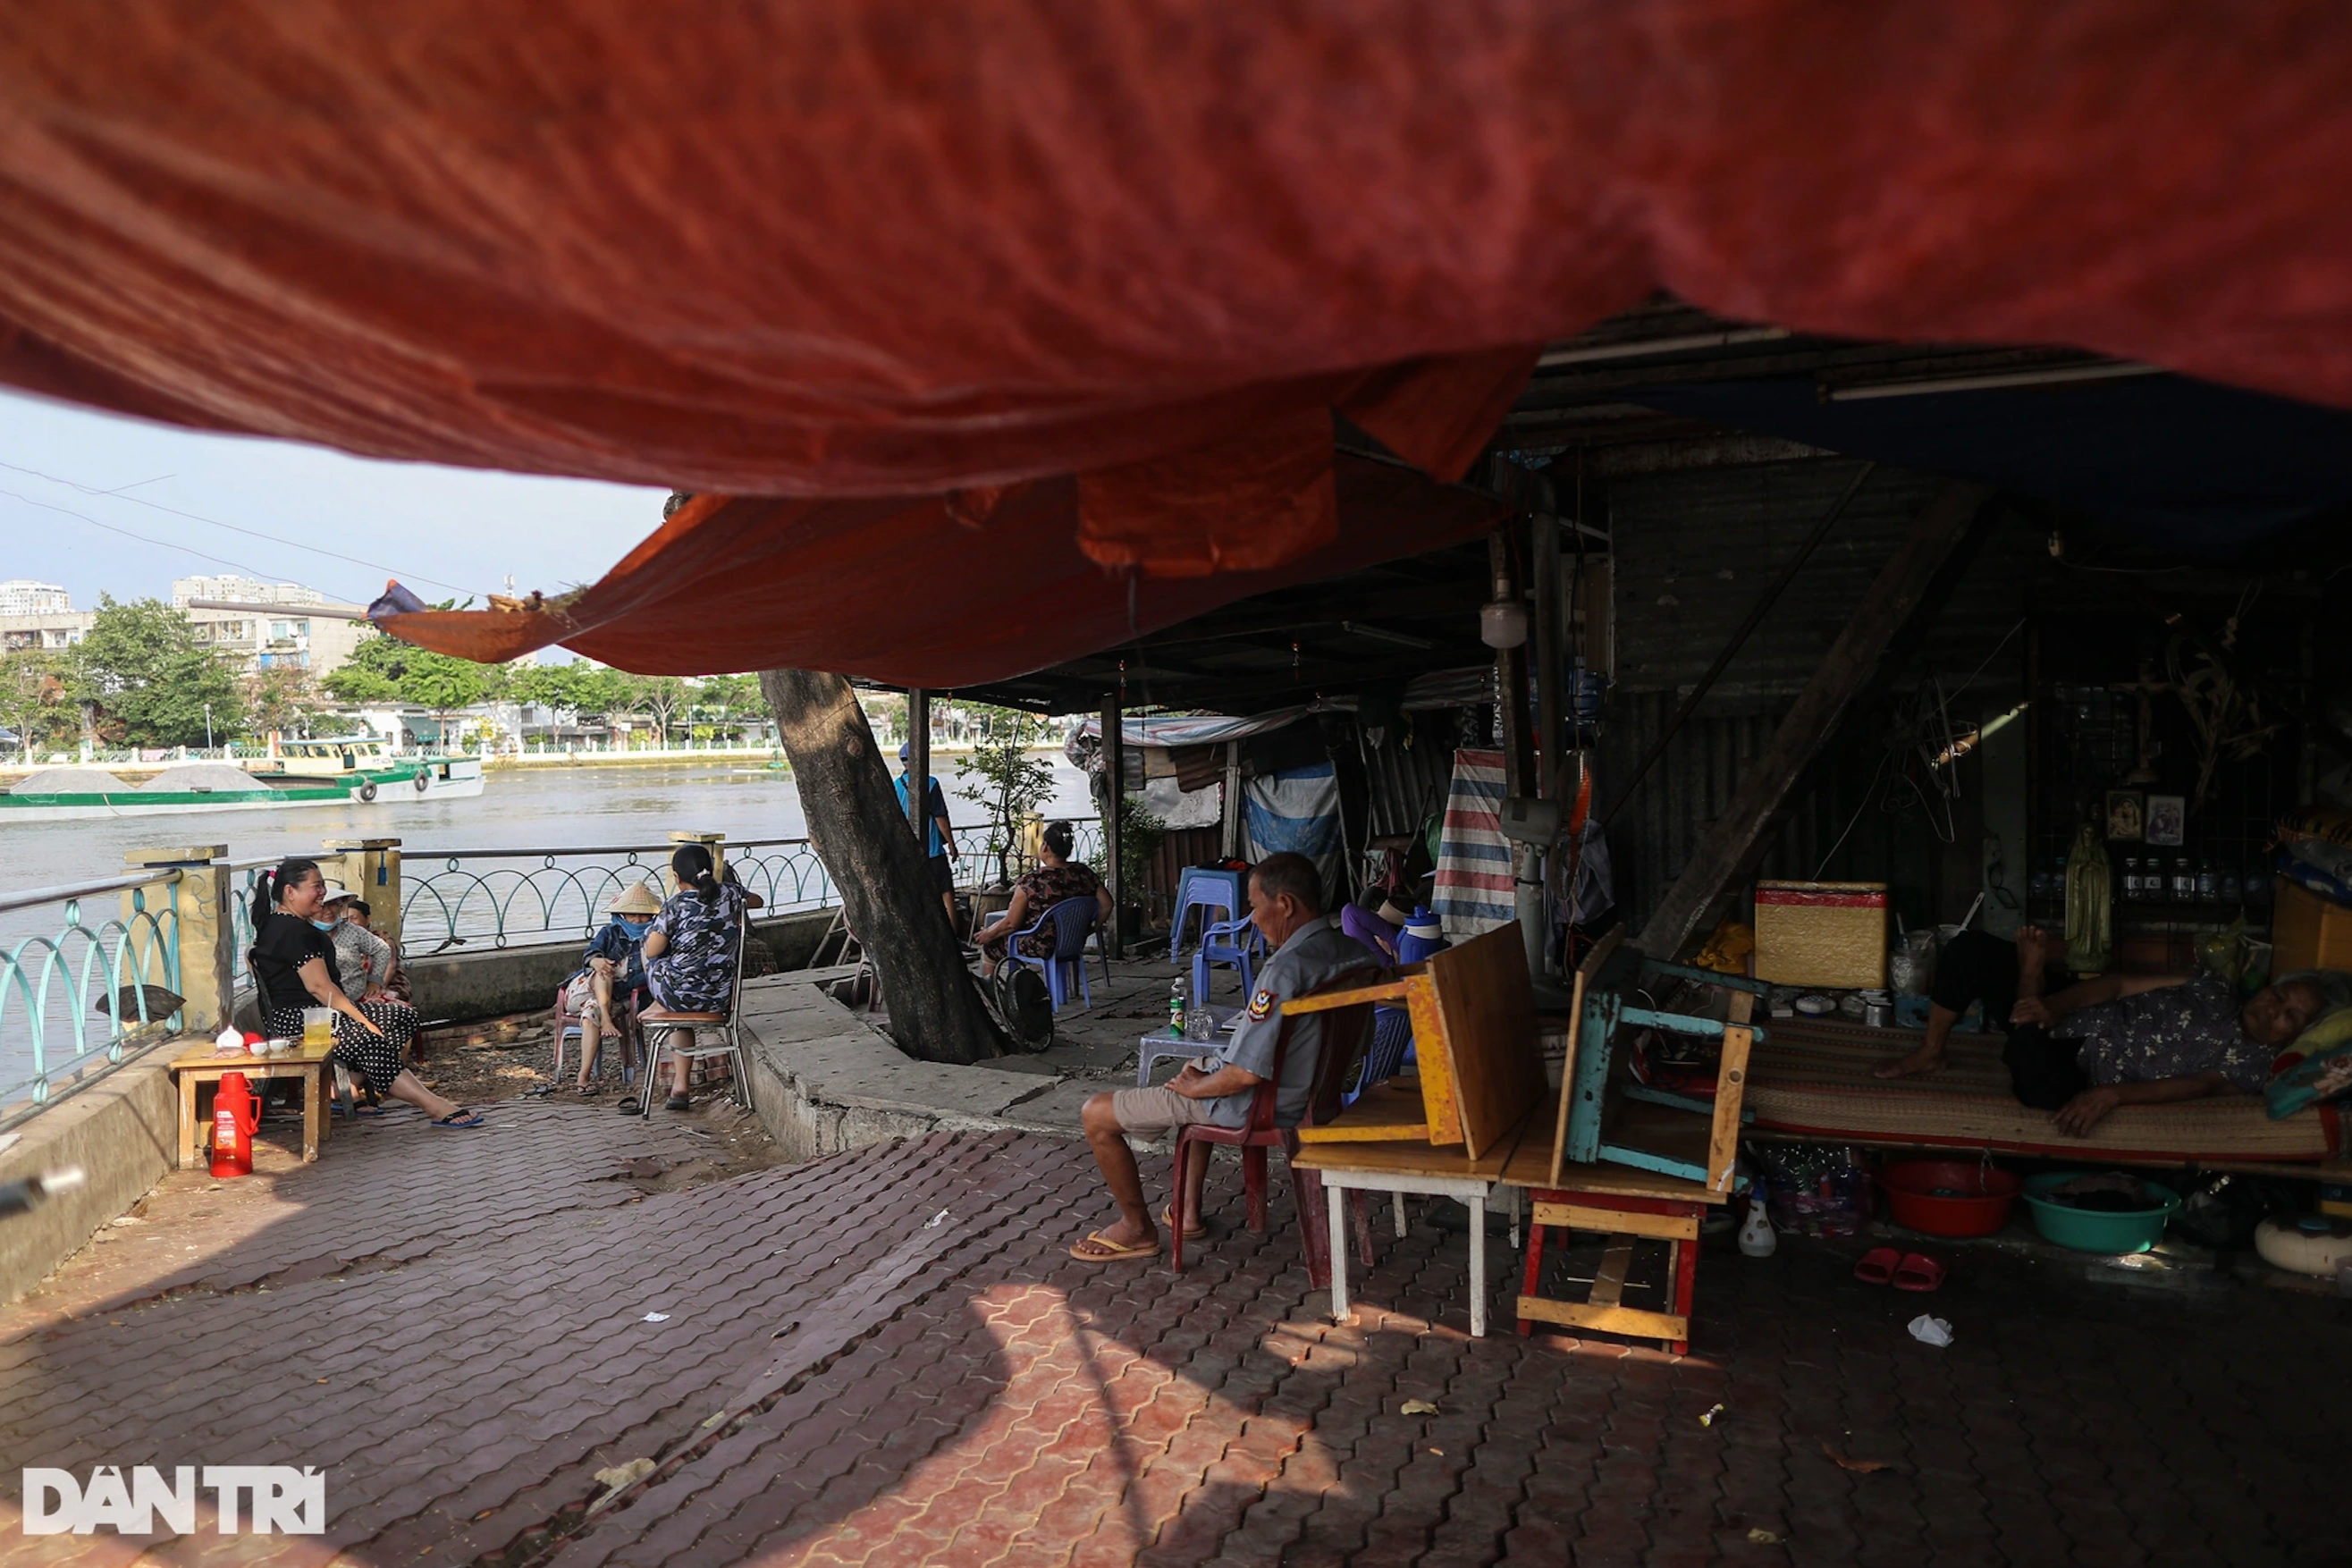 View - Lao động nghèo sống thấp thỏm trong những ngôi nhà chờ sập giữa TPHCM | Báo Dân trí